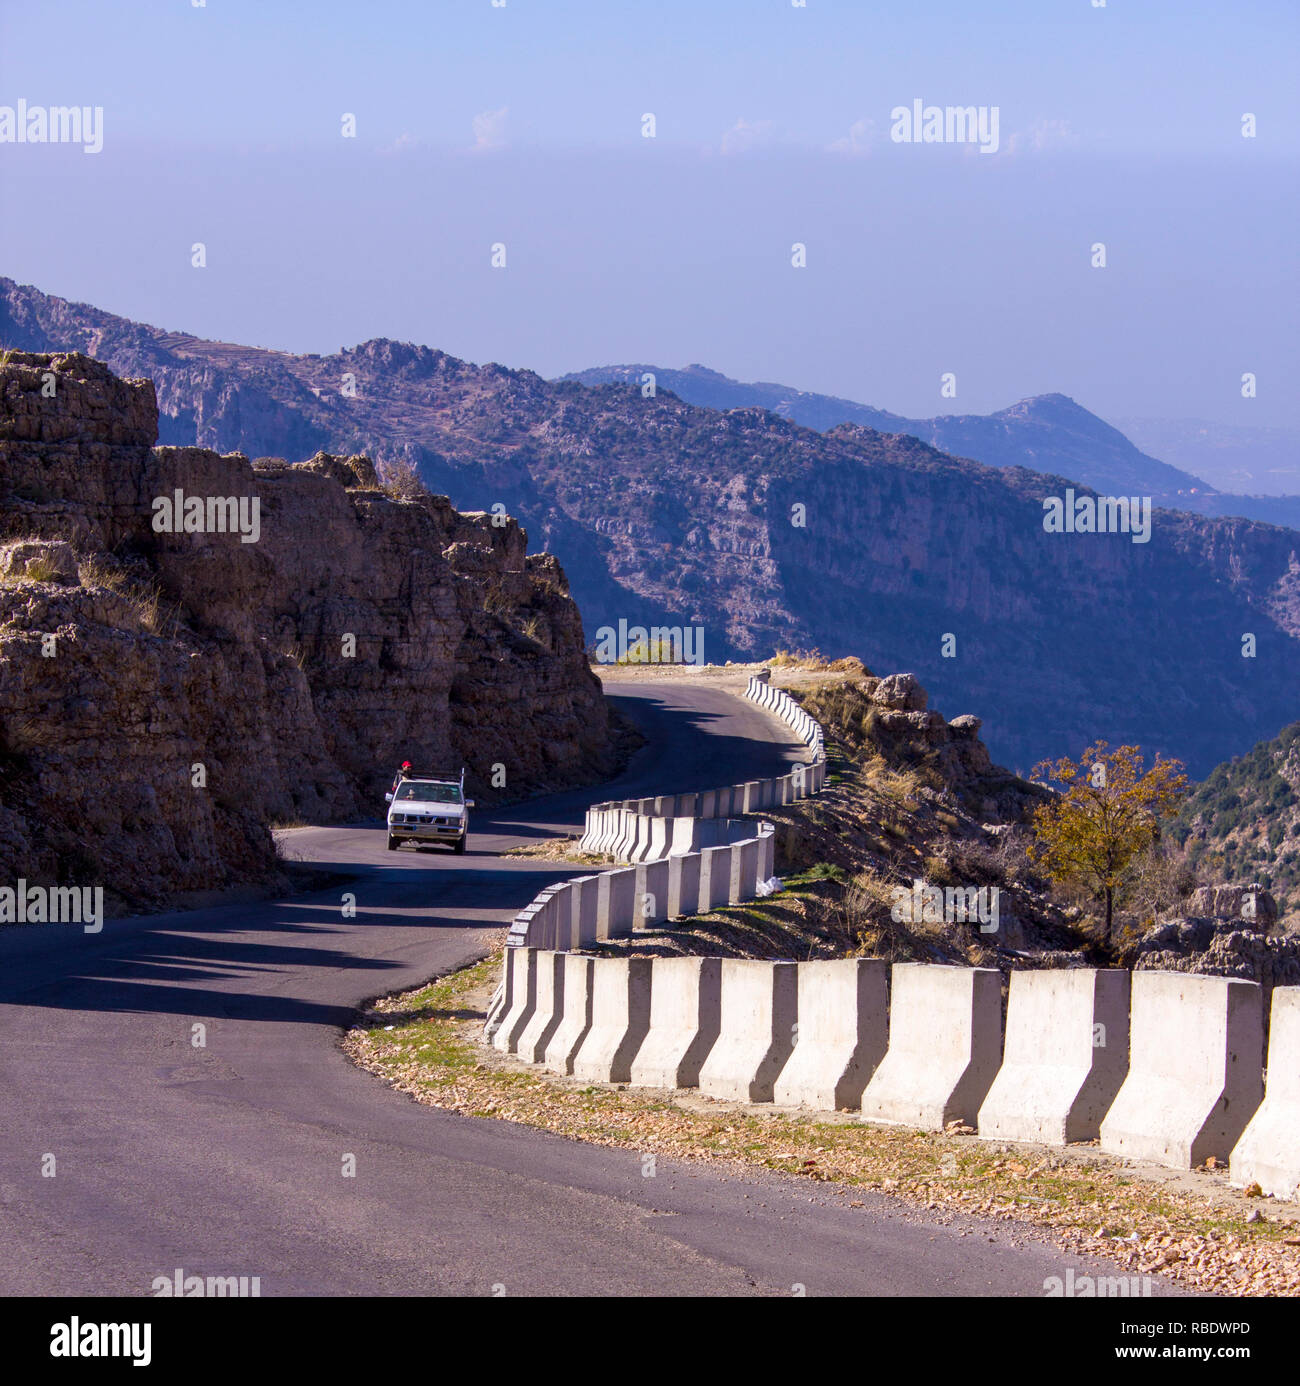 Eine Straße von Bcharre bewegt sich nach unten zum Bekaa-tal im Norden Libanons. Libanesischen Landschaft und Autobahn Stockfoto